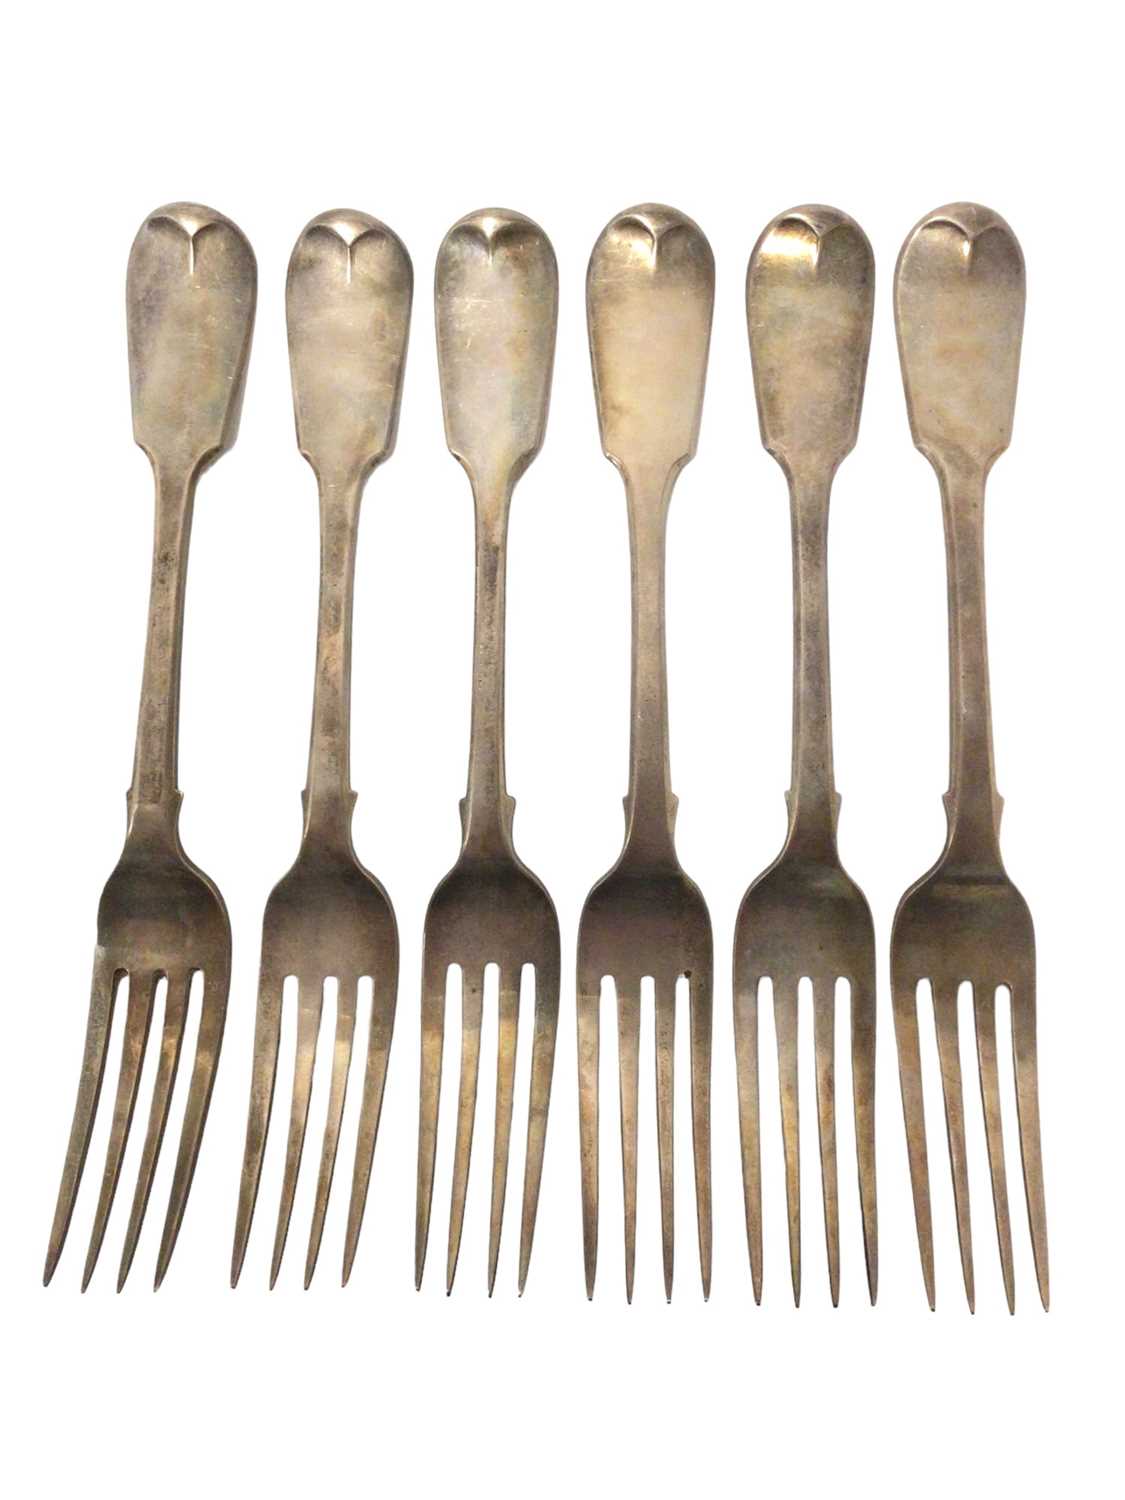 Six George IV fiddle pattern dinner forks